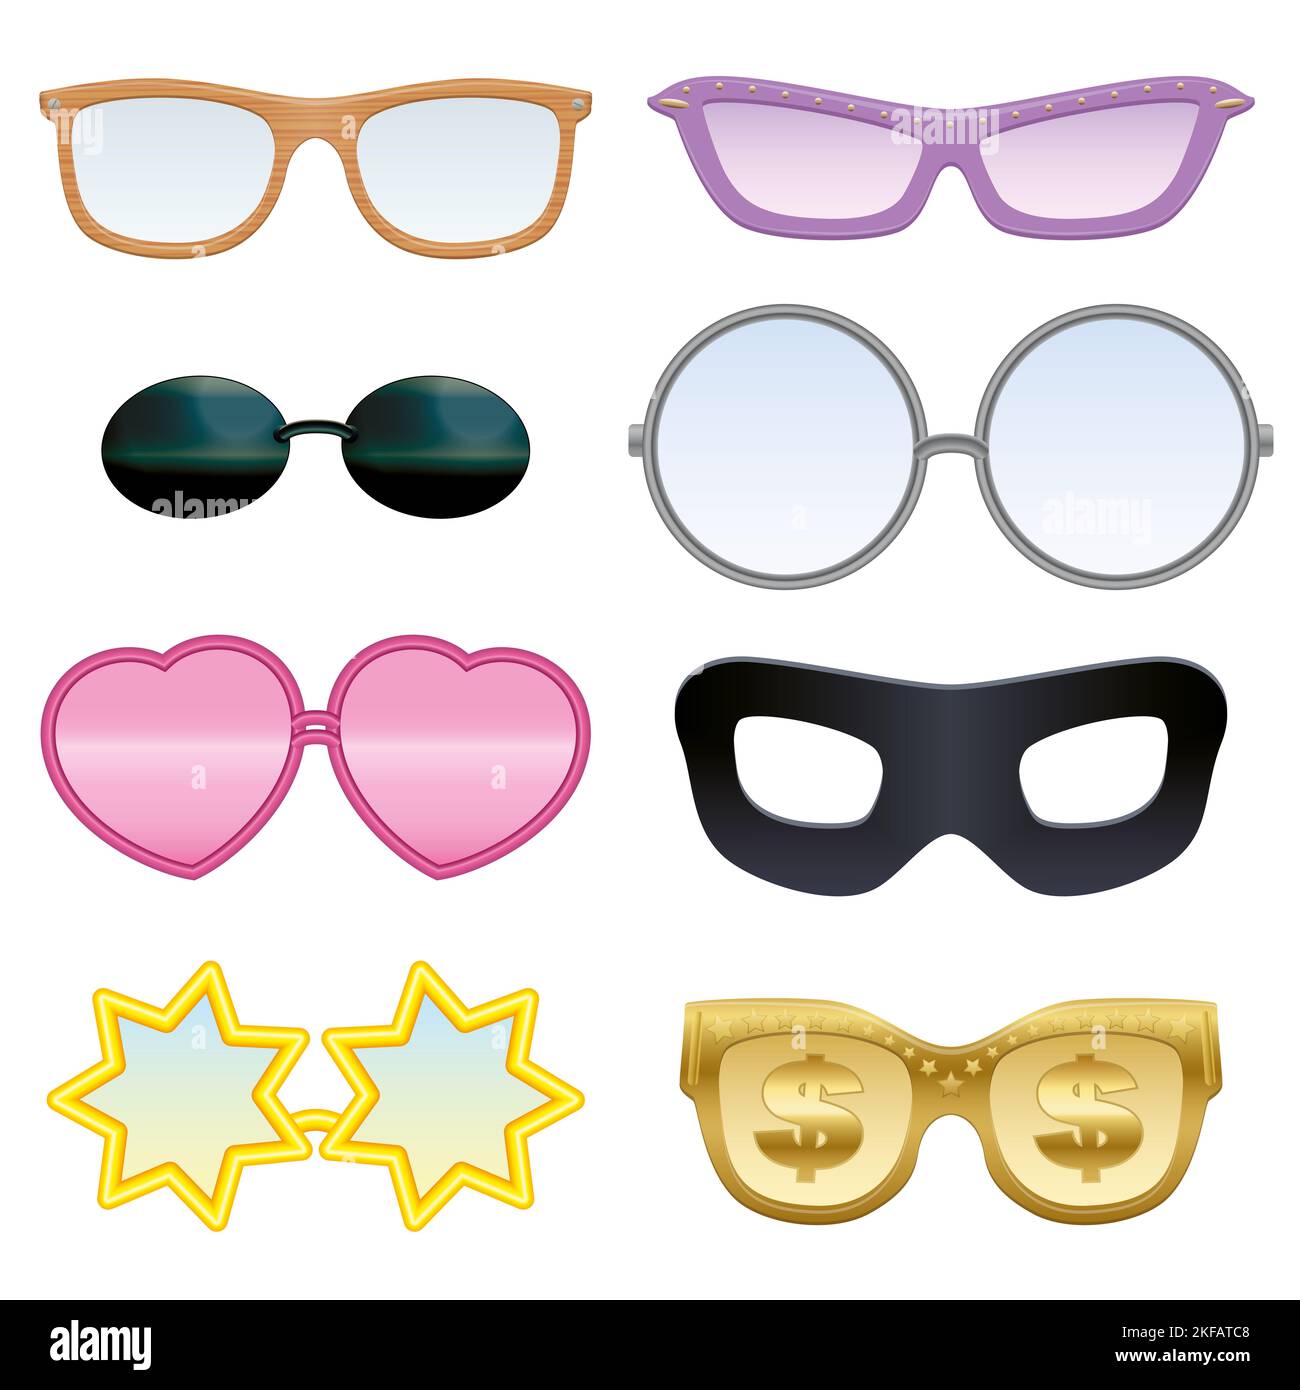 Set occhiali - stile legno, cuori, stelle, segni dollaro, maschera occhio nero, pince-nez, rosa-colorato ecc - divertente e pazzo, collezione. Foto Stock